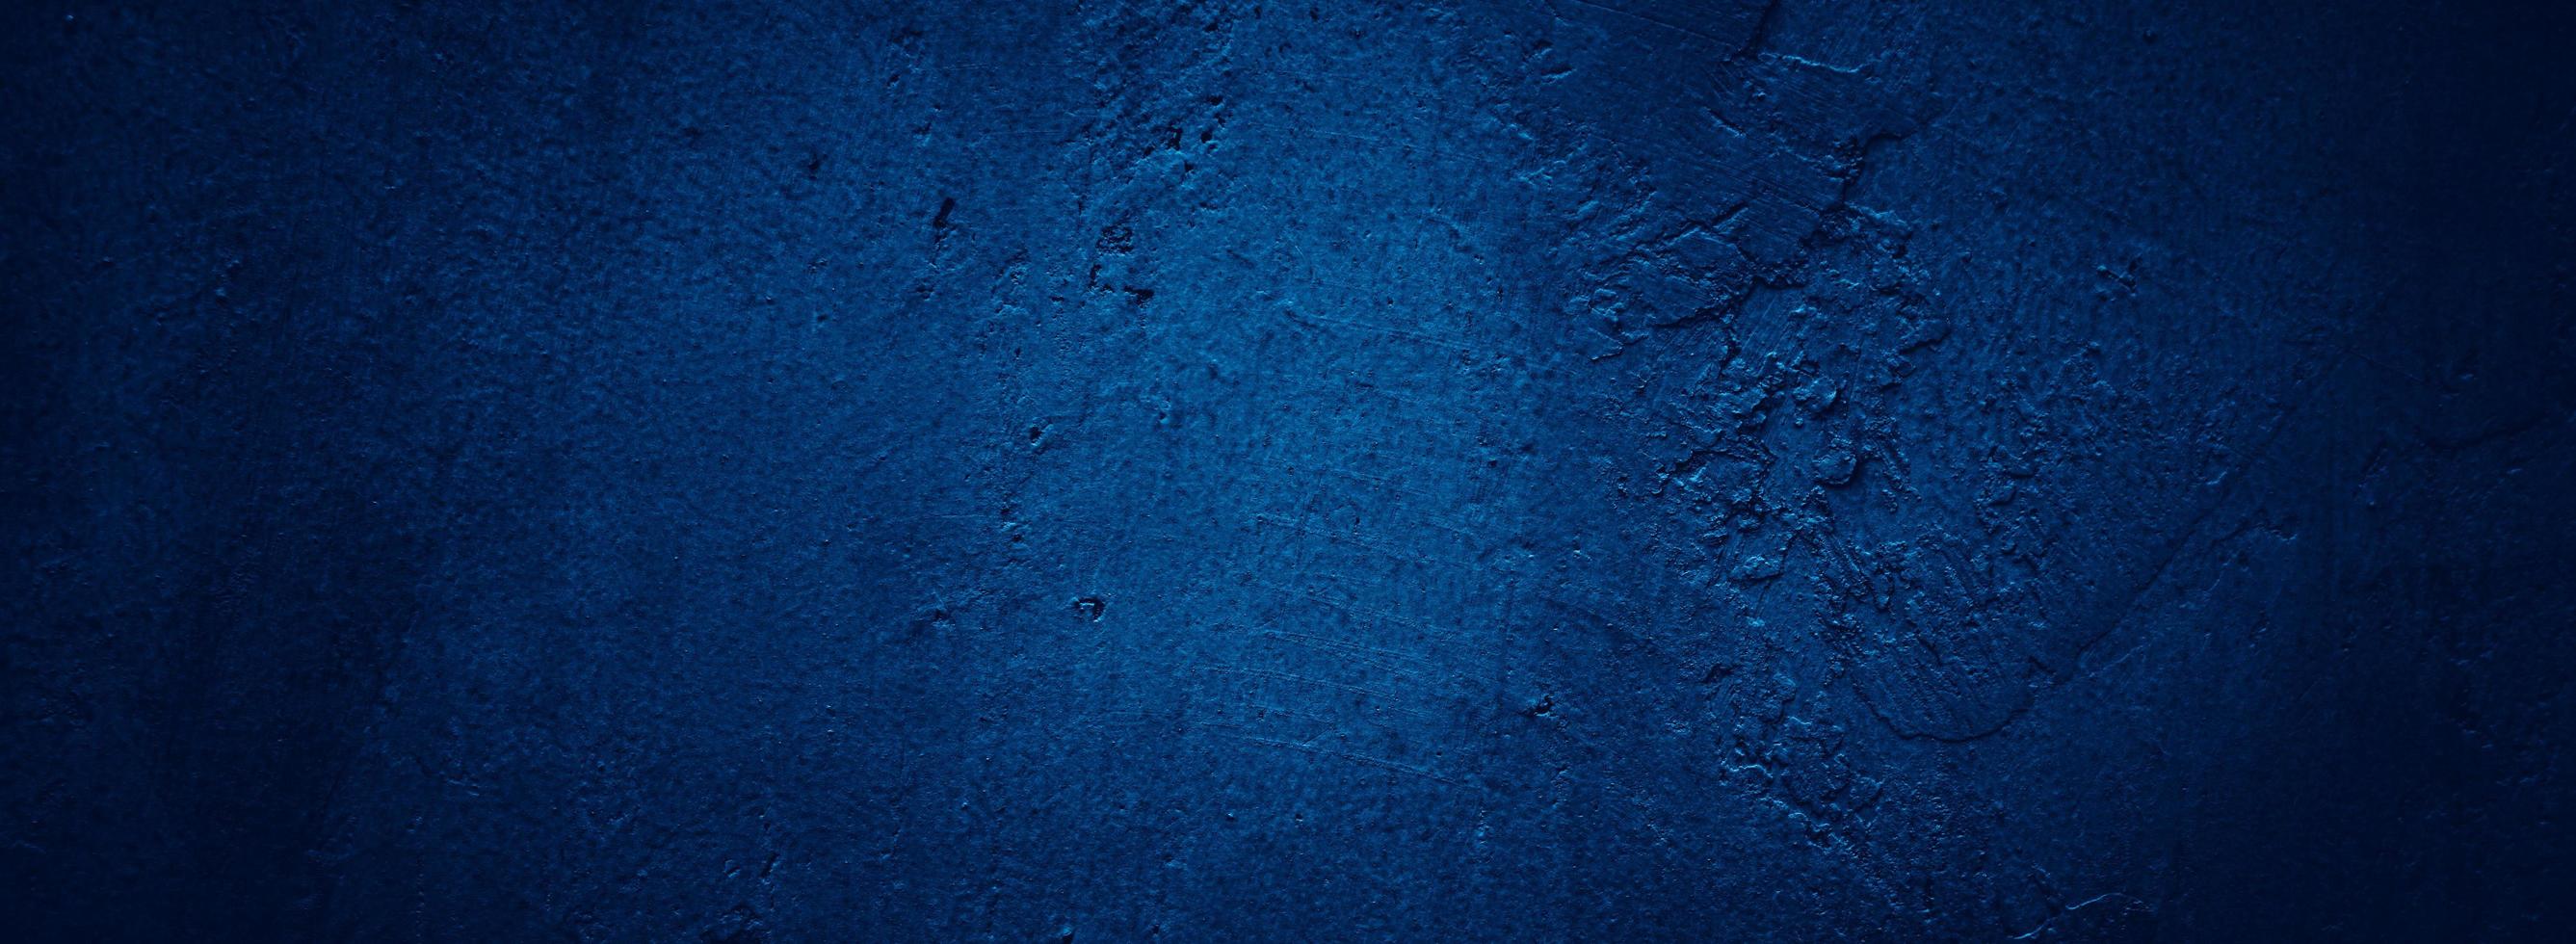 abstrakt dunkel Grunge Blau Mauer Textur Hintergrund foto